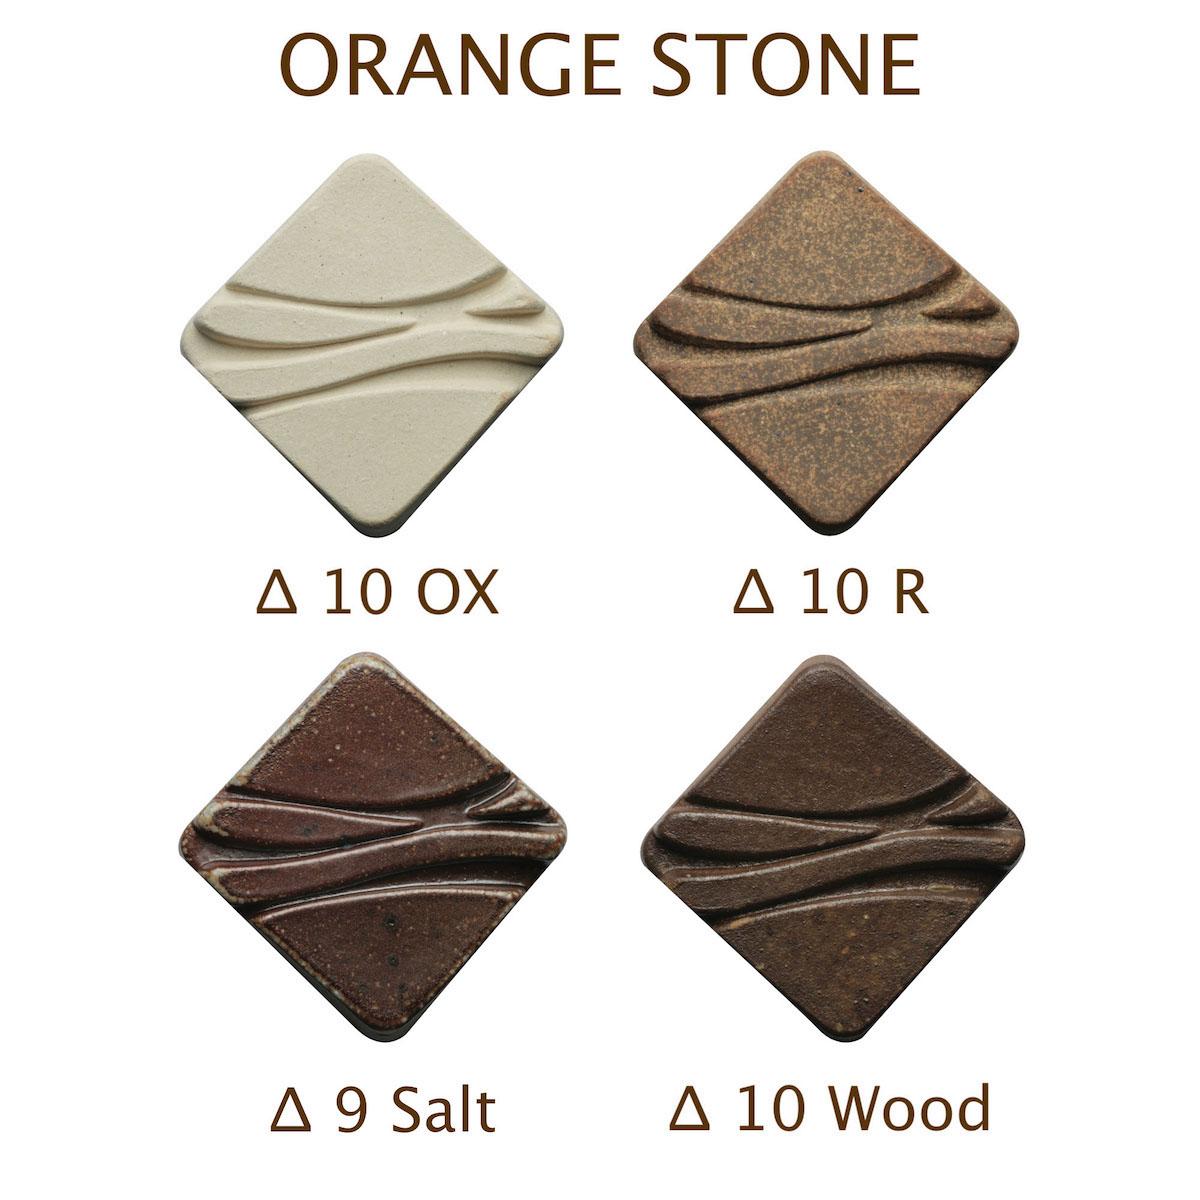 Orangestone Cone 7-10